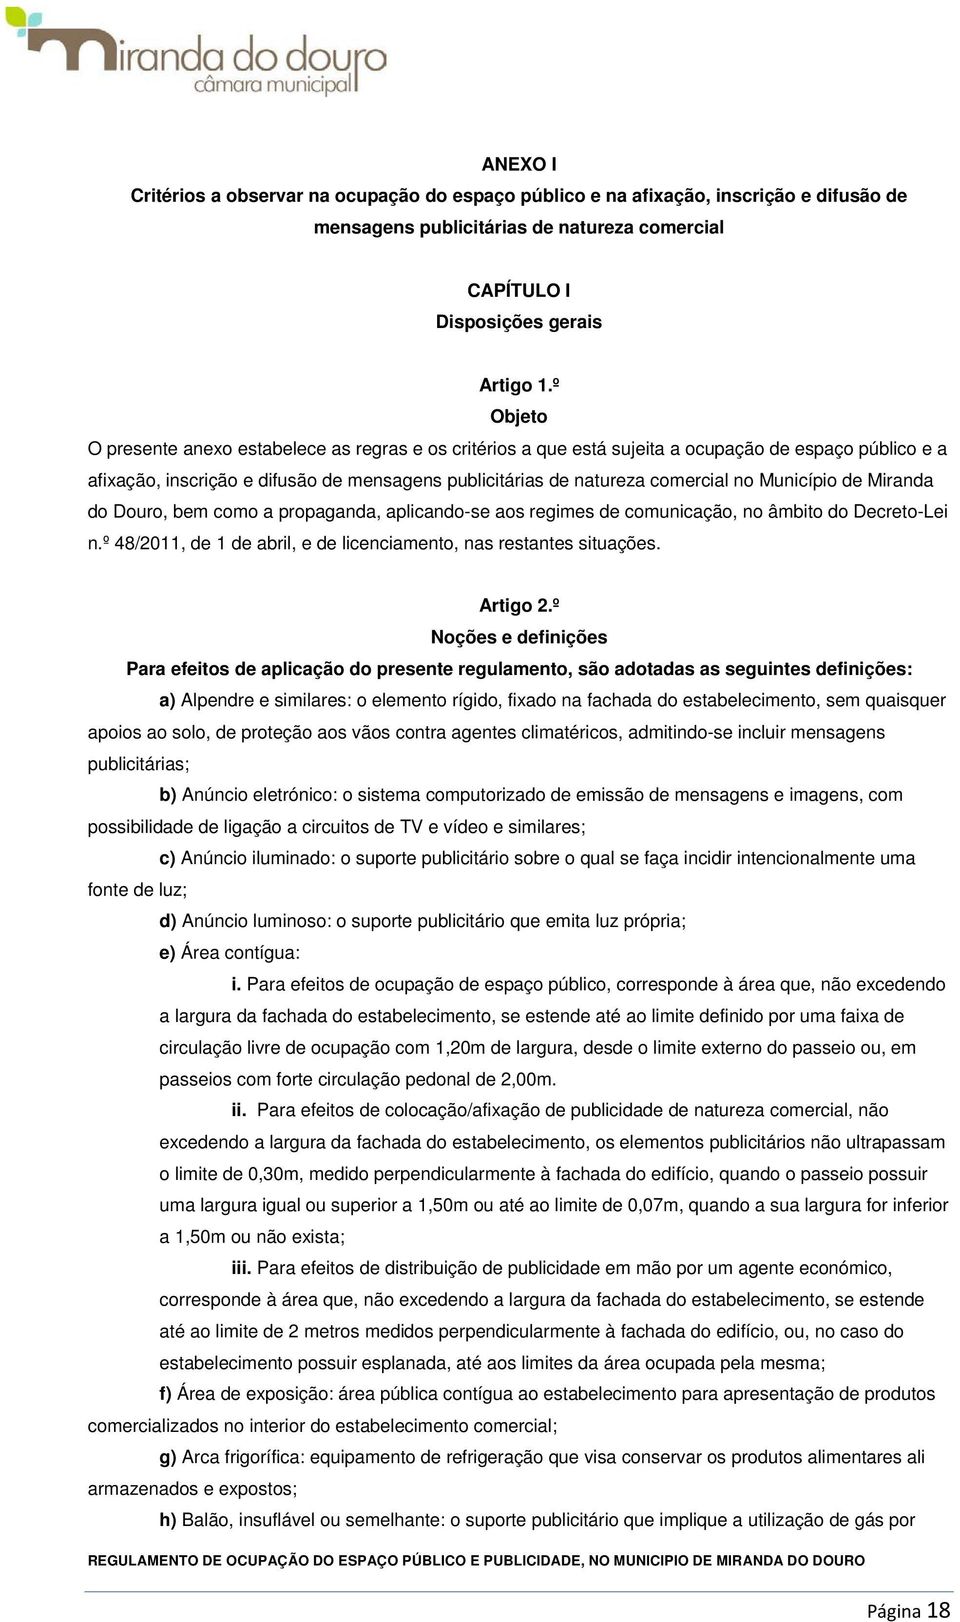 Município de Miranda do Douro, bem como a propaganda, aplicando-se aos regimes de comunicação, no âmbito do Decreto-Lei n.º 48/2011, de 1 de abril, e de licenciamento, nas restantes situações.